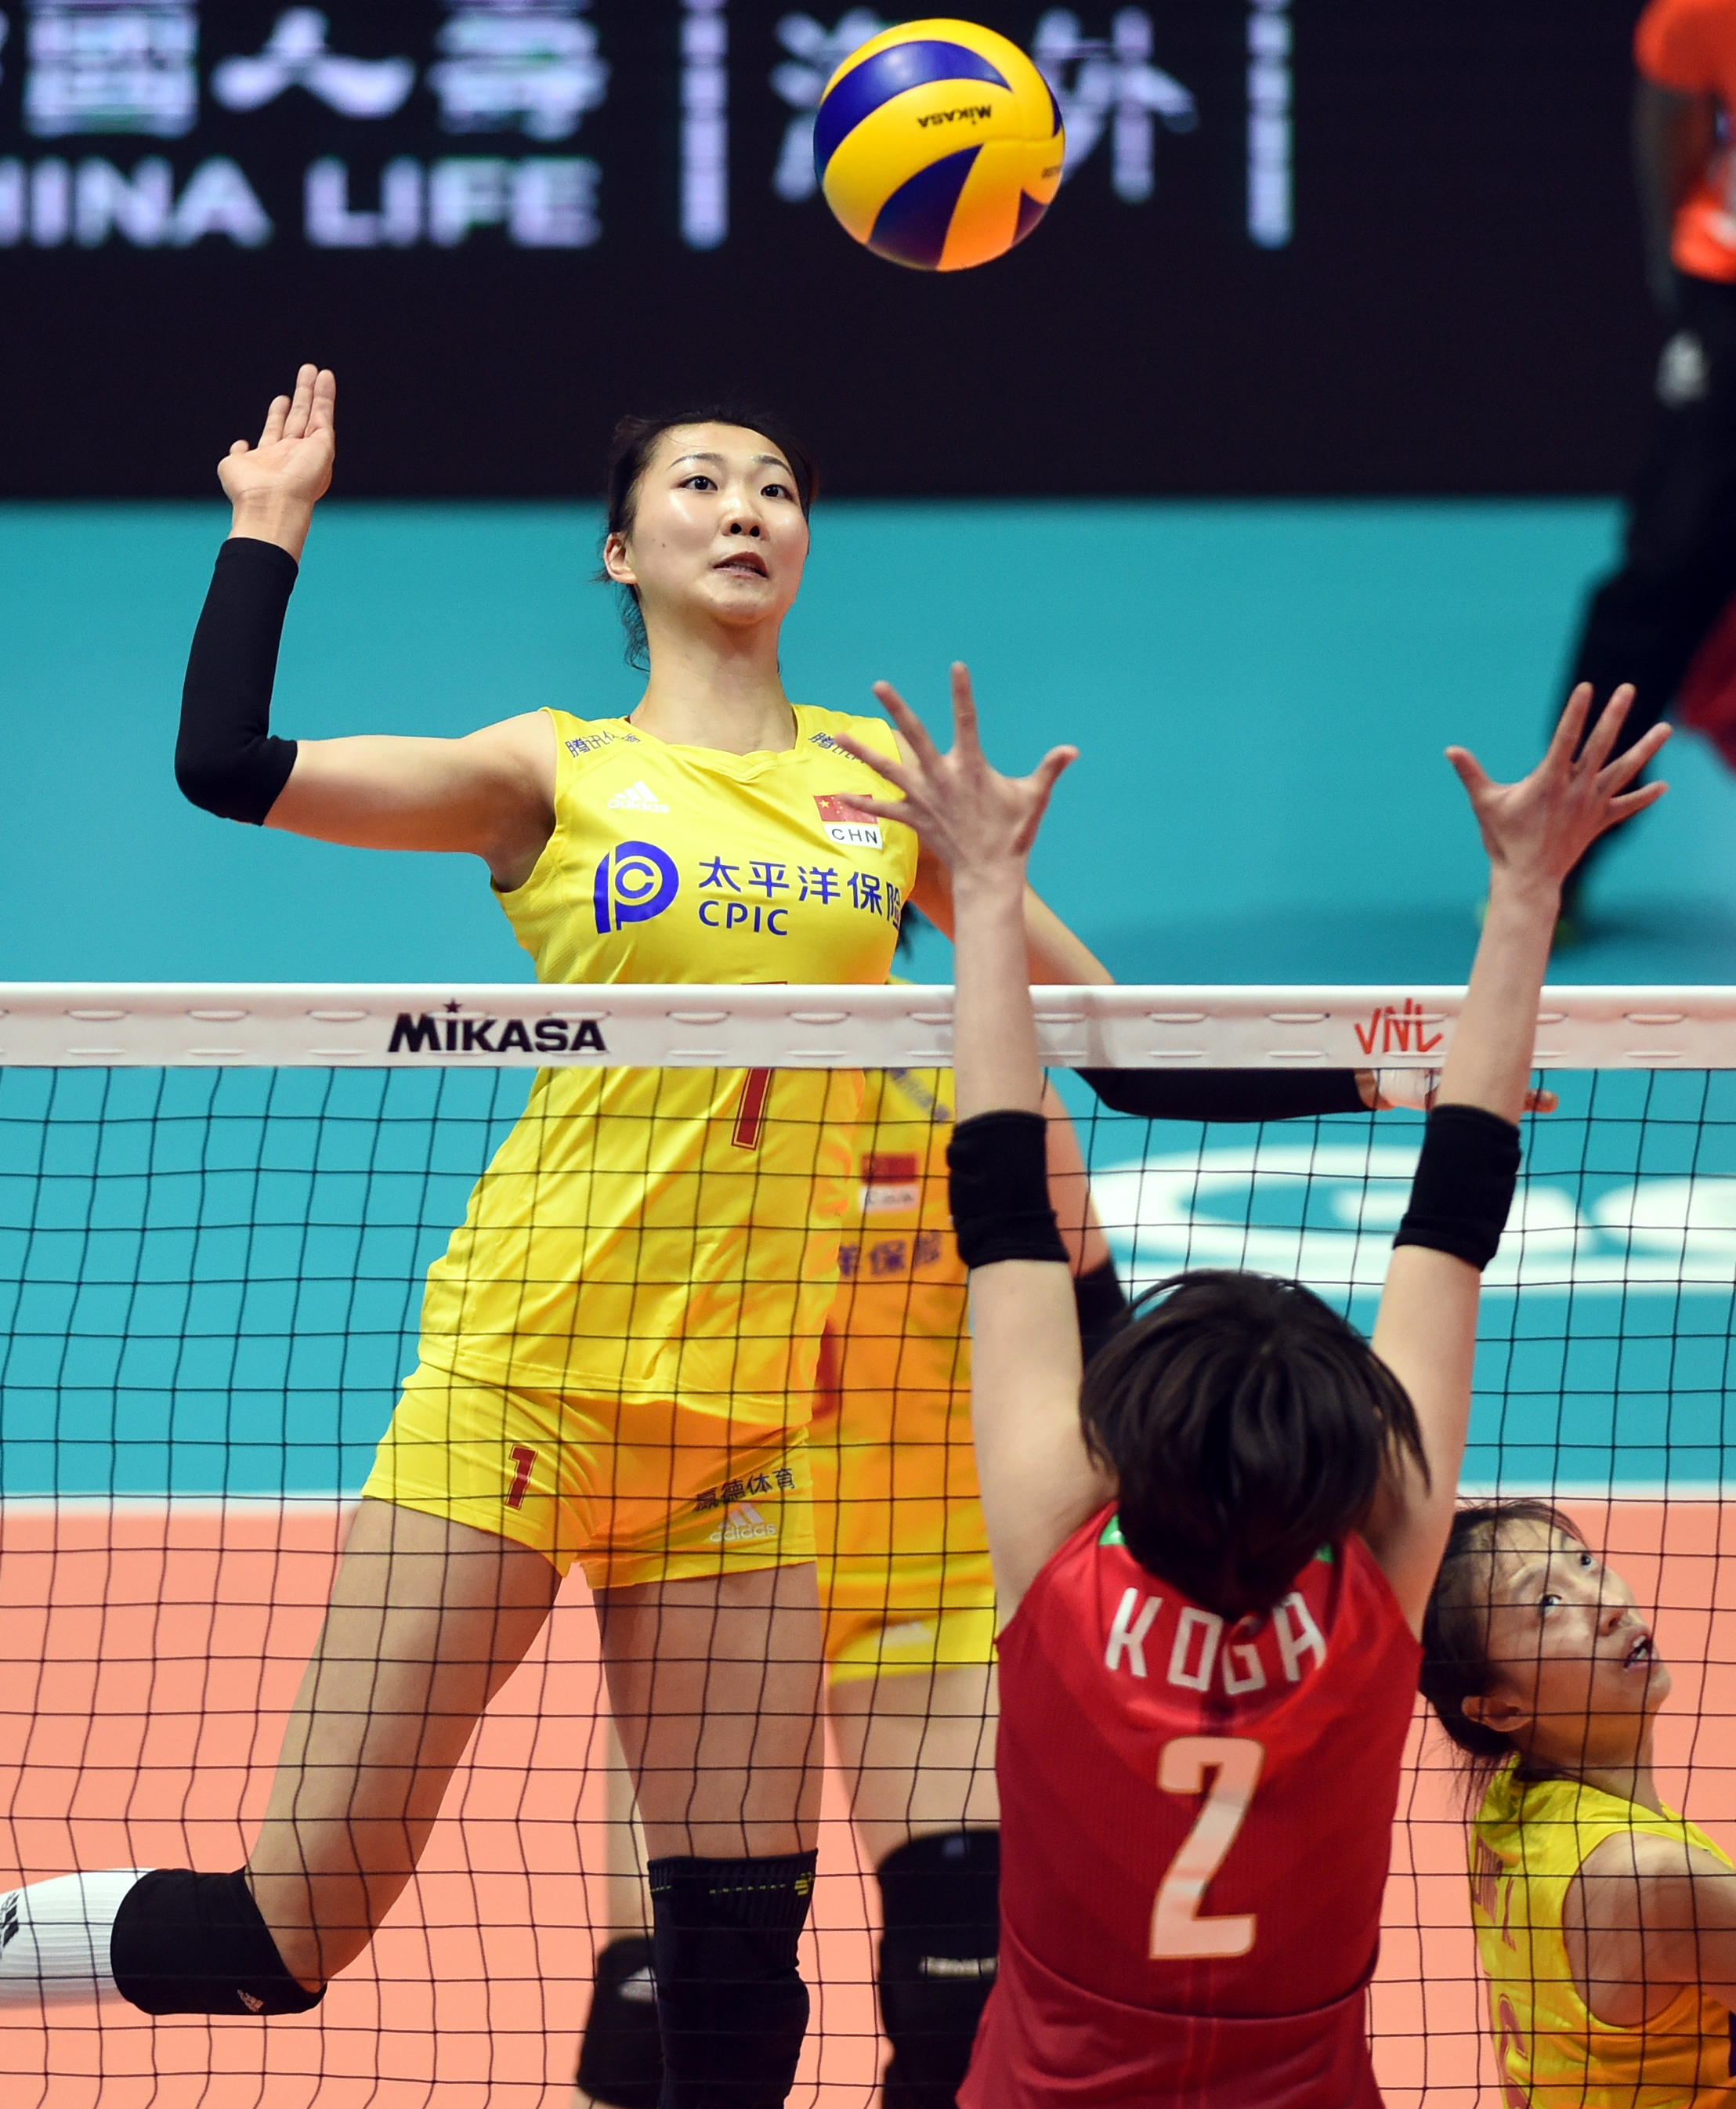 6月4日,中国队球员袁心玥(上)在比赛中扣球.